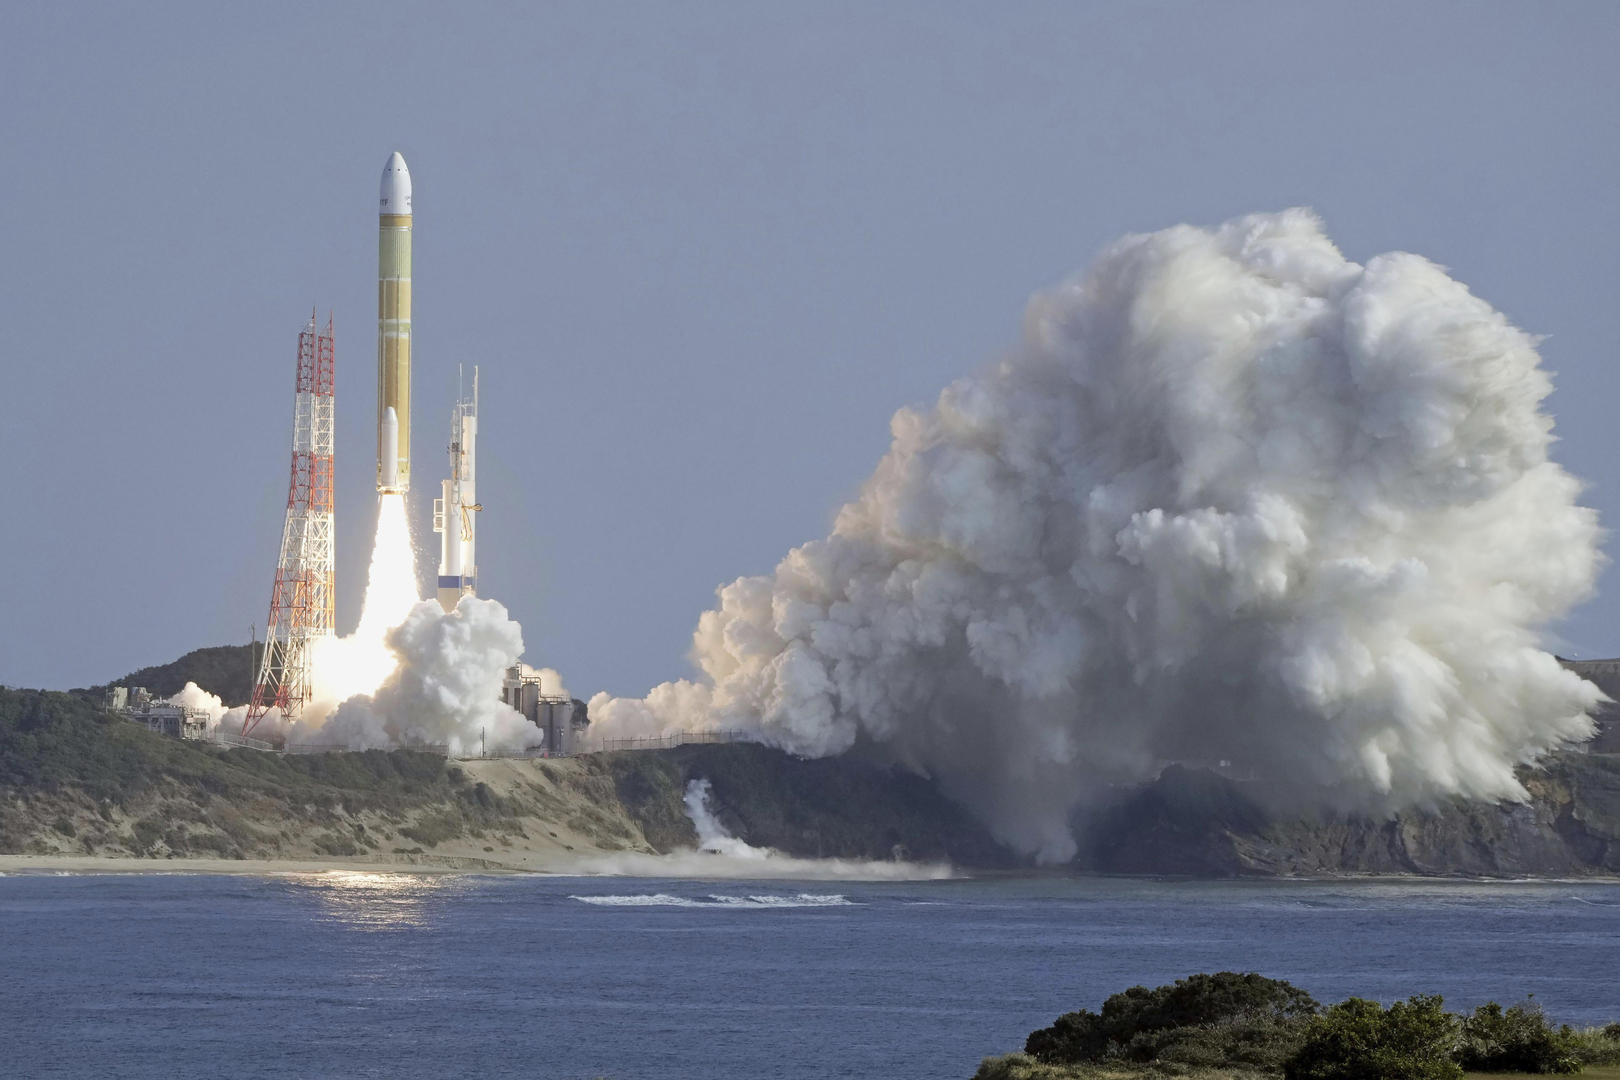 اليابان تنجح في إطلاق صاروخ جديد إلى الفضاء (فيديو)